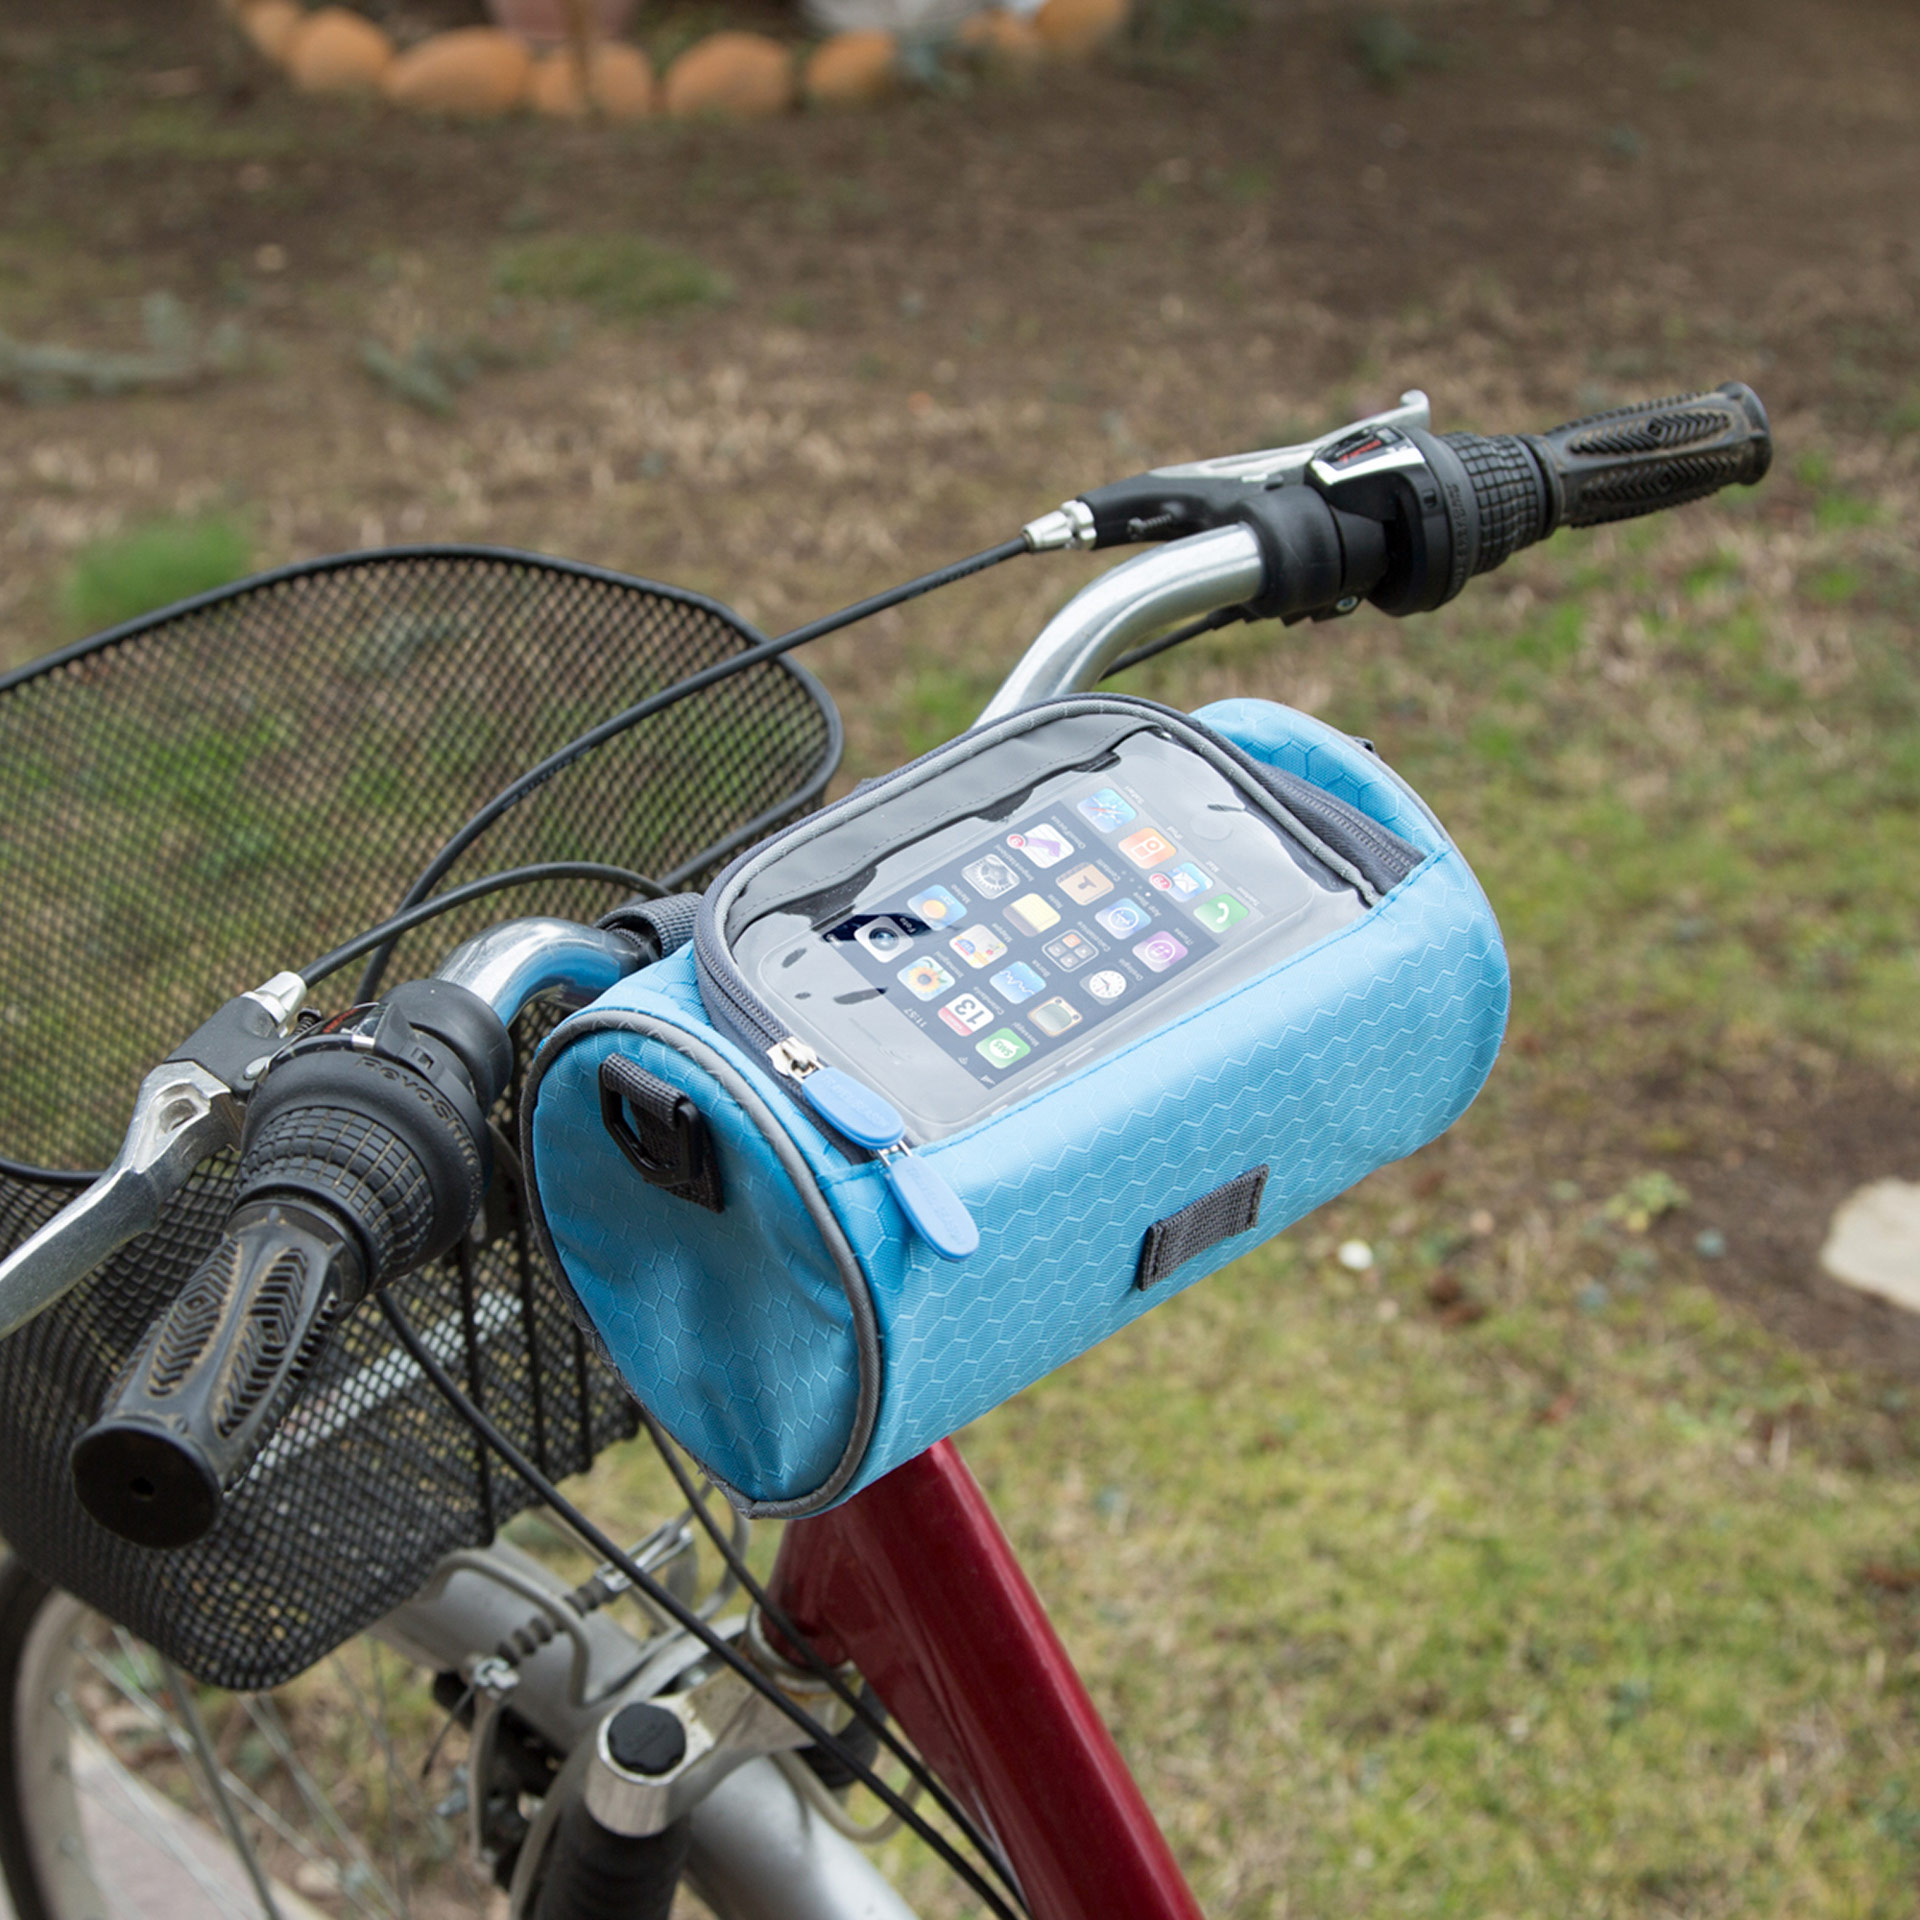 Fino a 6 Pollici Borse Bicicletta Manubrio Borsa Telefono Porta Cellulare Bici KATELUO Borsa Bici,Impermeabile con Touchscreen TPU Sensibile 